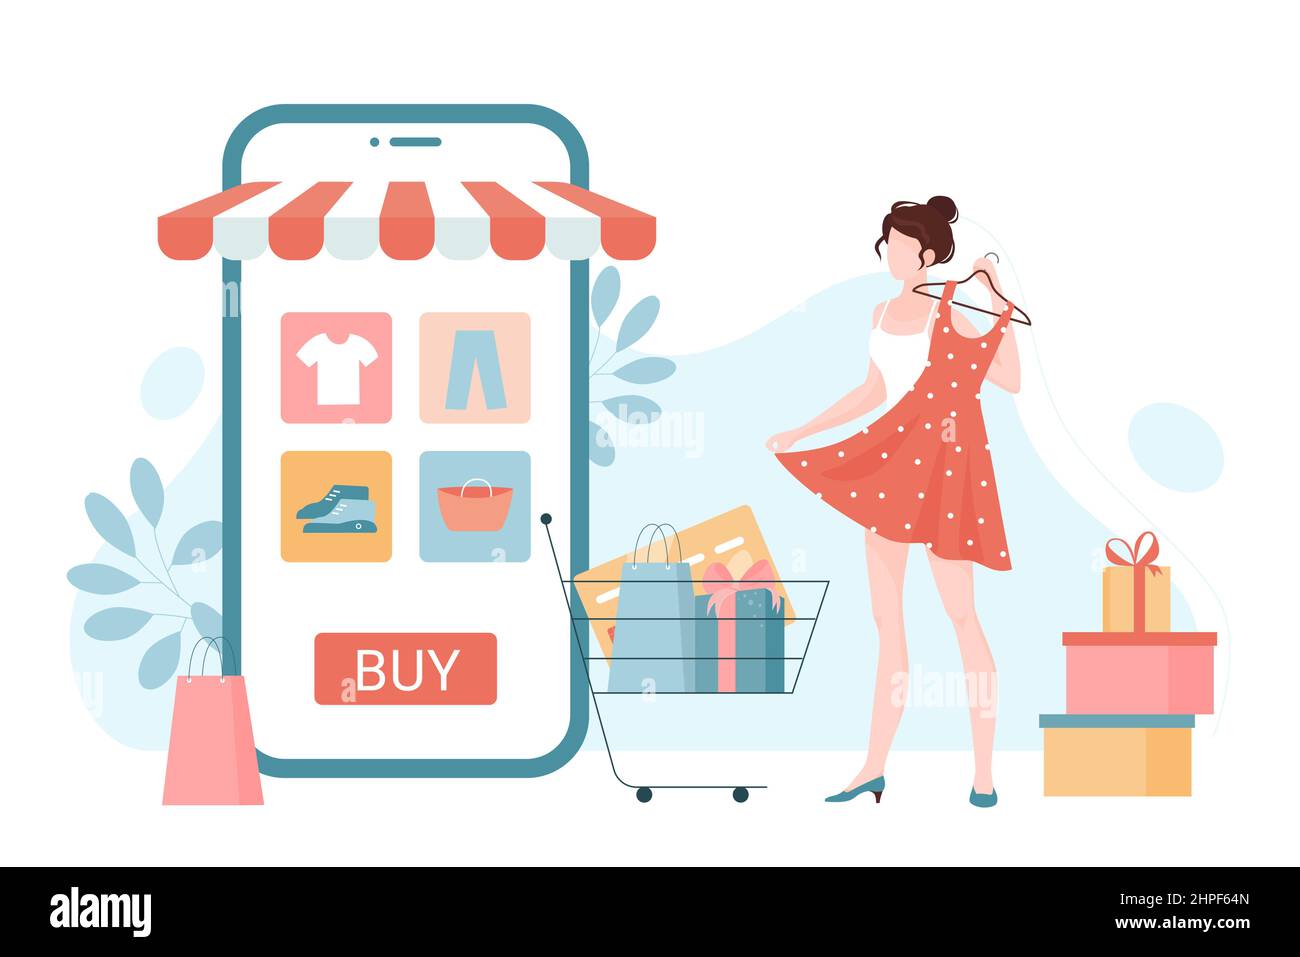 Comercio en línea, tienda de moda al por menor o aplicación de mercado y cliente con compras. mujer de compras para comprar ropa vía teléfono móvil plano vector ilustración. Marketing digital,